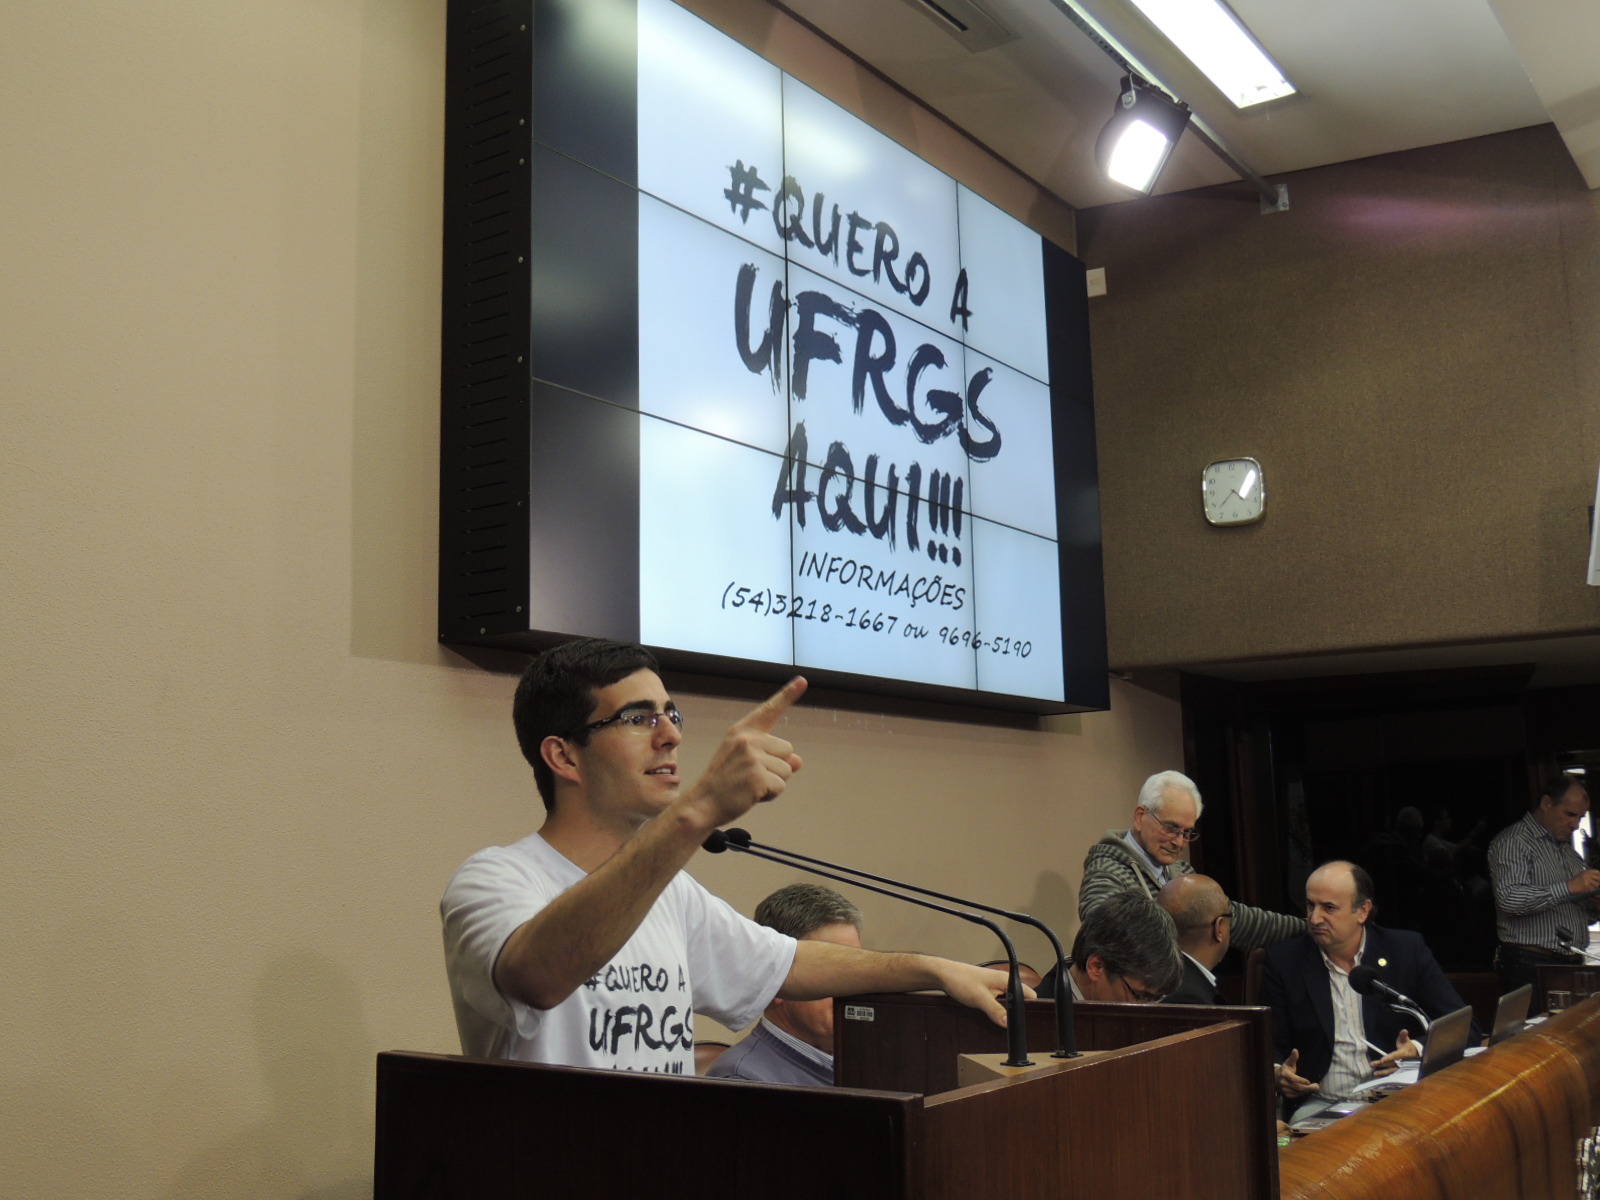 Comissão Pró-Universidade Pública Federal recebe apoio à campanha “Quero a UFRGS Aqui!”  